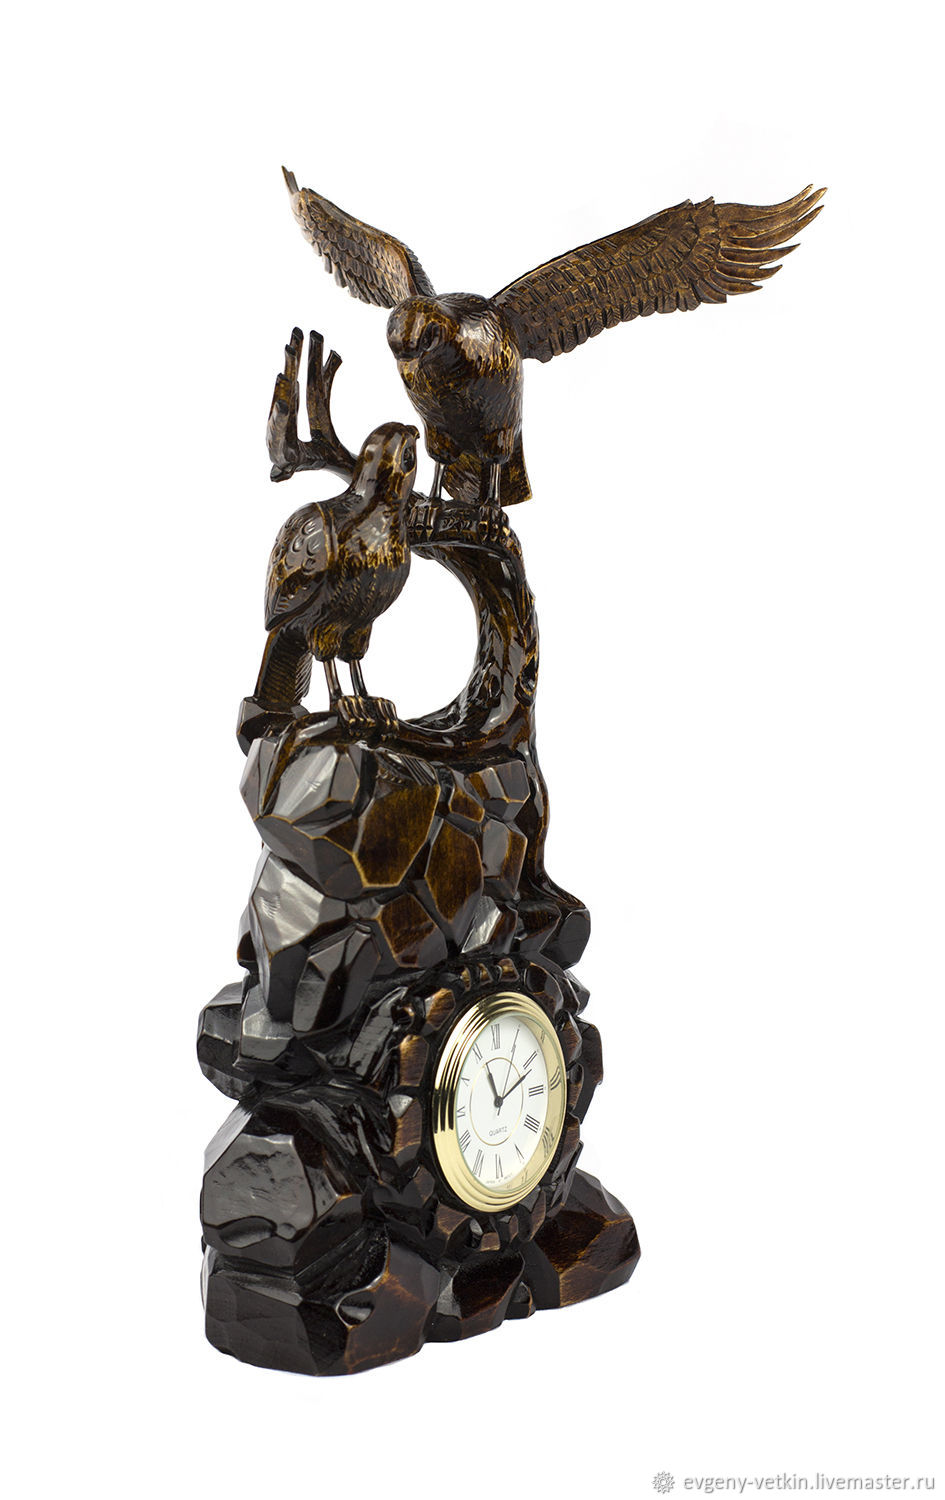 Прием часов орел. Часы с орлом. Часы Орловские настольные. Часы из дерева с орлом. Часы в Орлов.